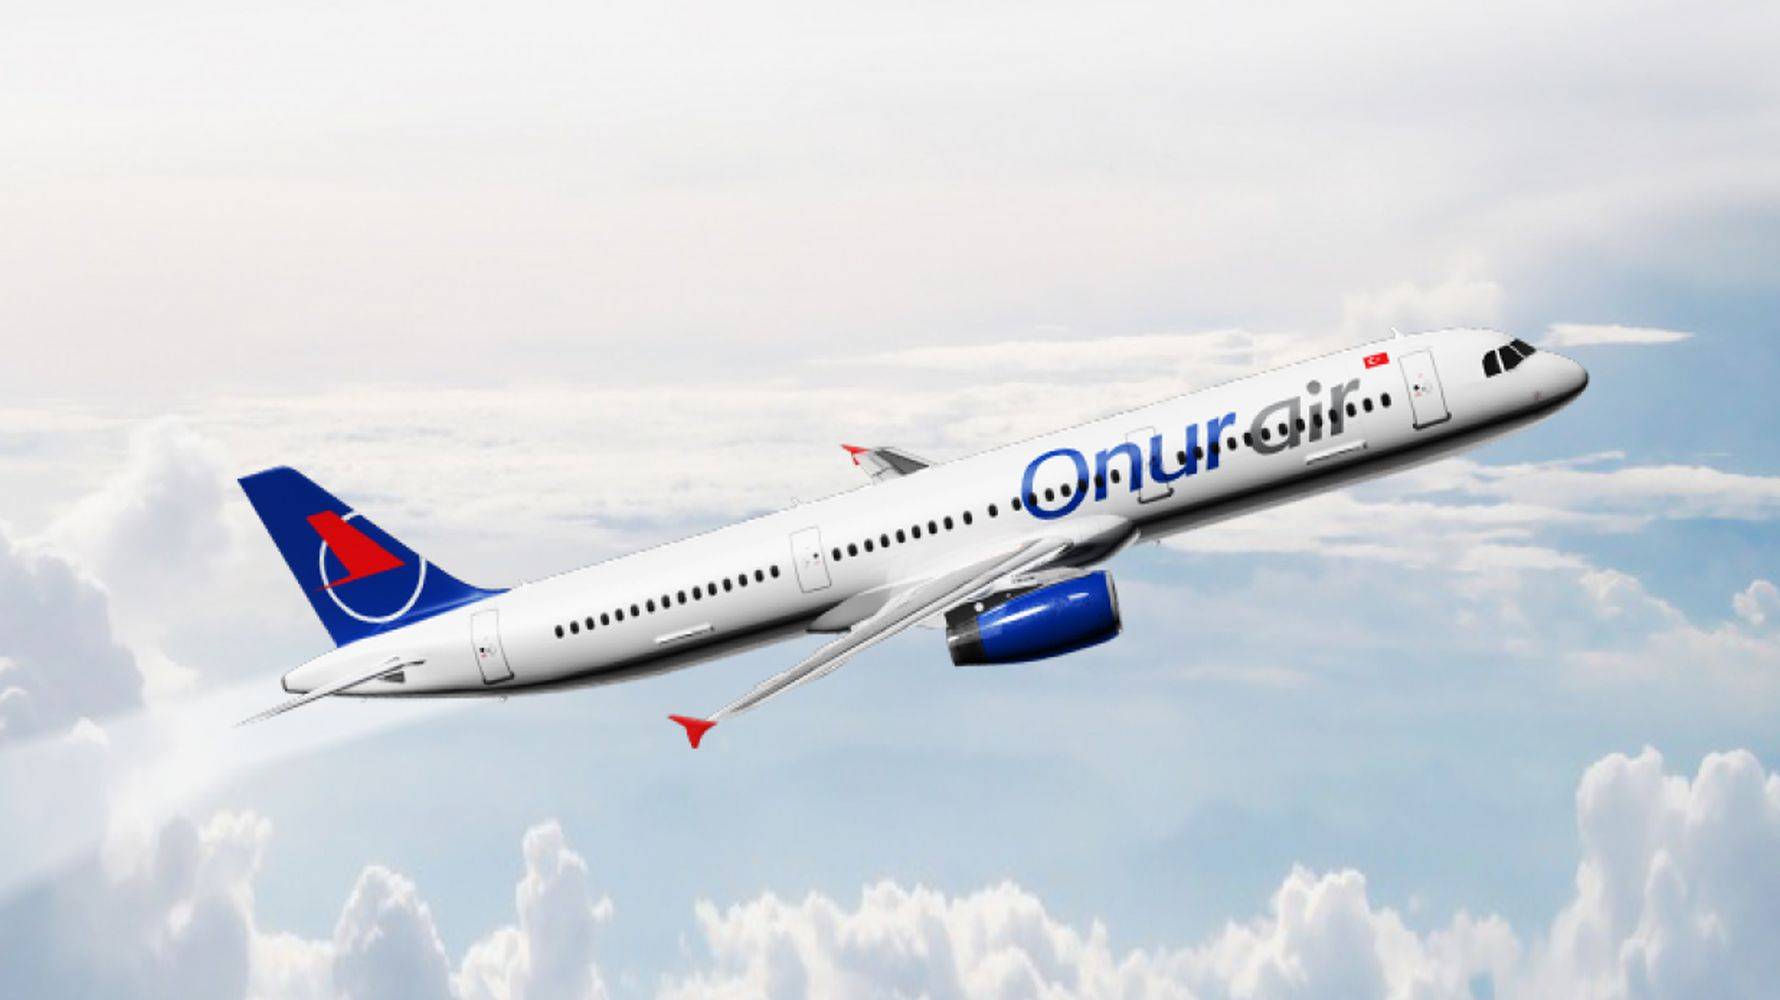 Турецкая авиакомпания «onur air» (онур эйр)